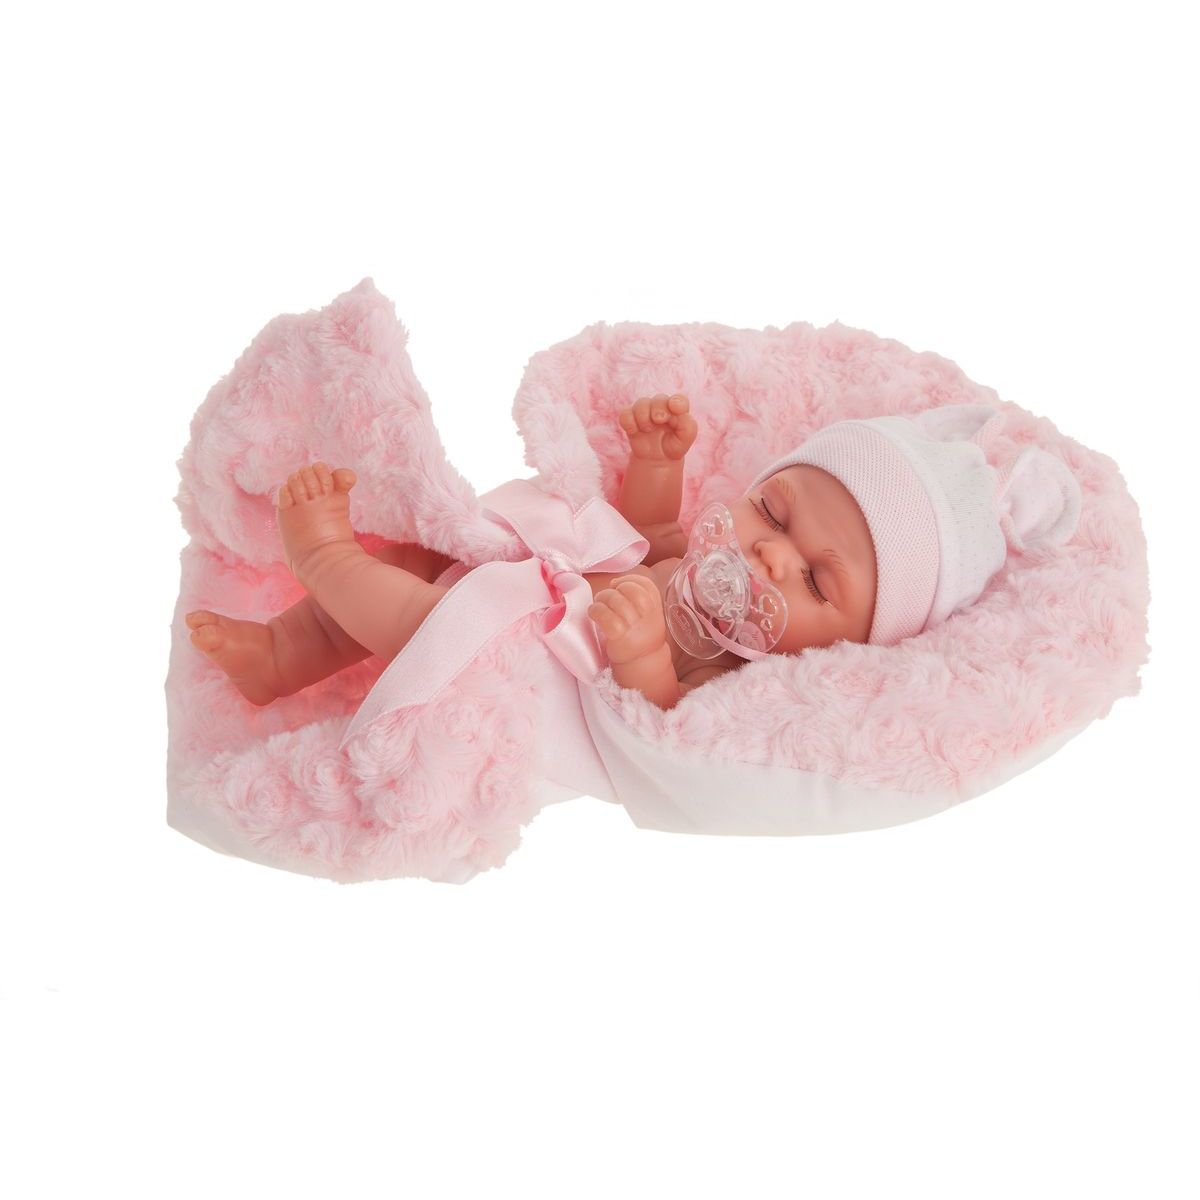 Antonio Juan 4074 Luni spící realistická panenka miminko s celovinylovým tělem 26 cm